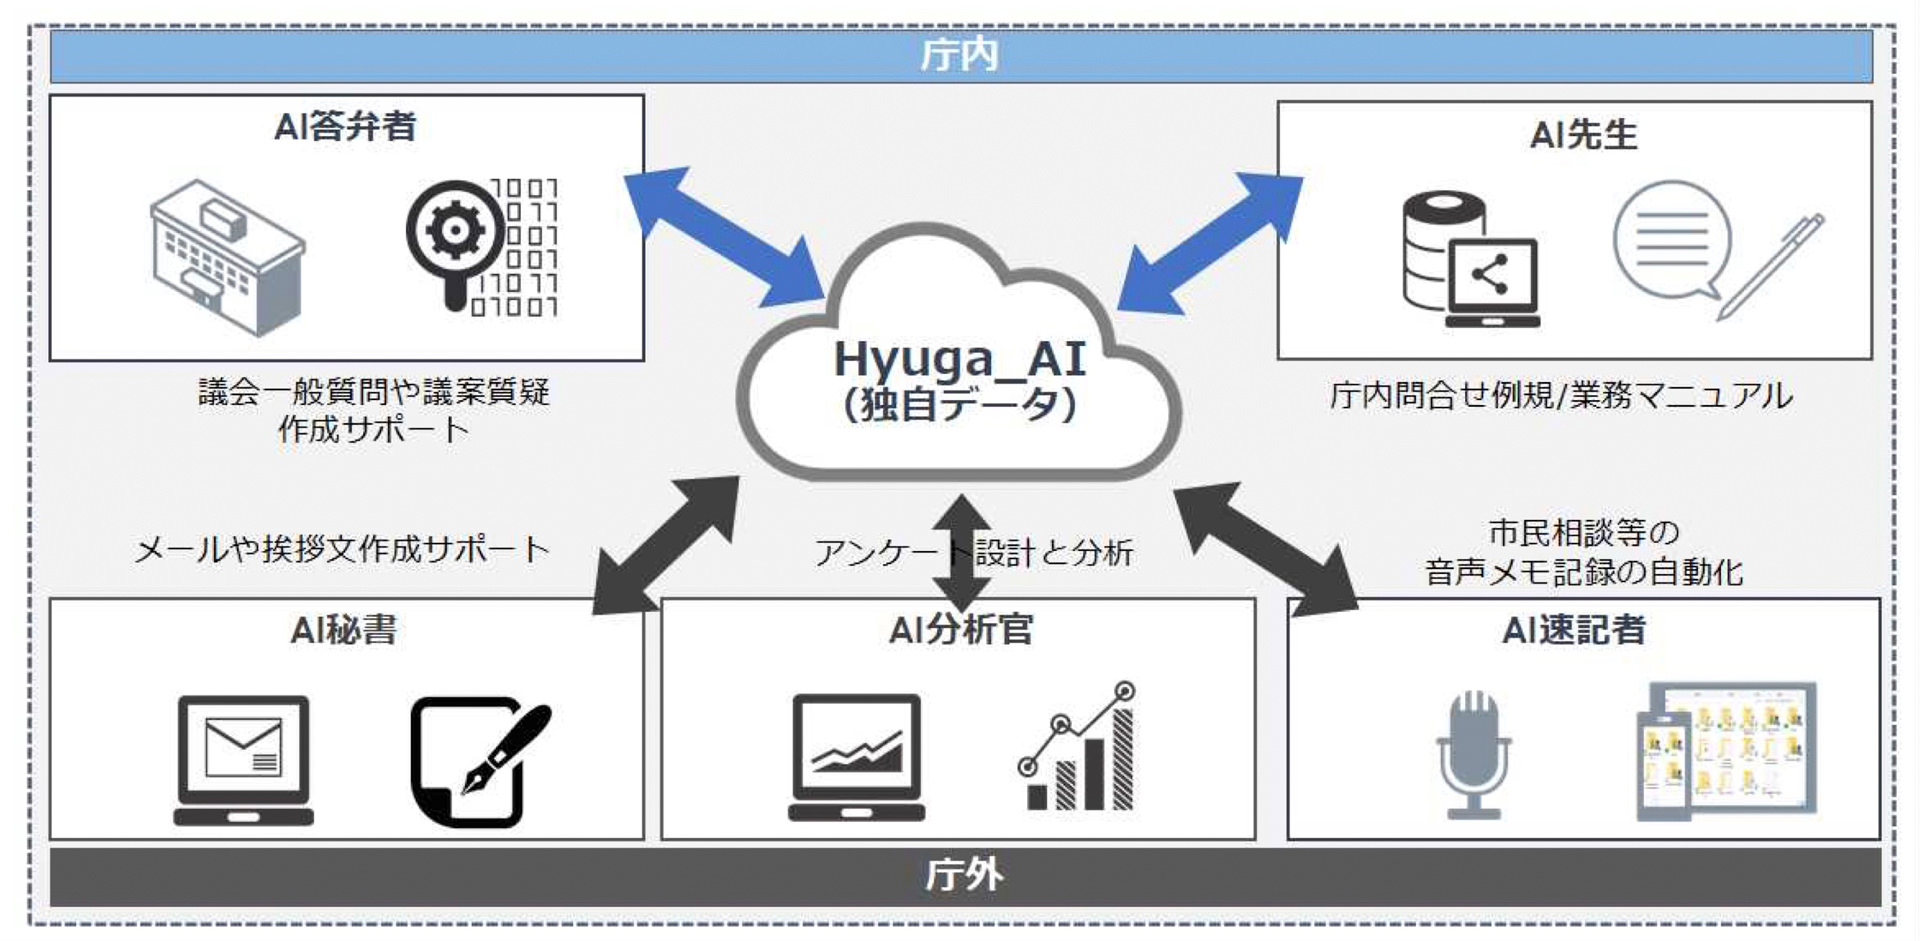 日向市の独自データを学習した日向市モデル「Hyuga_AI」